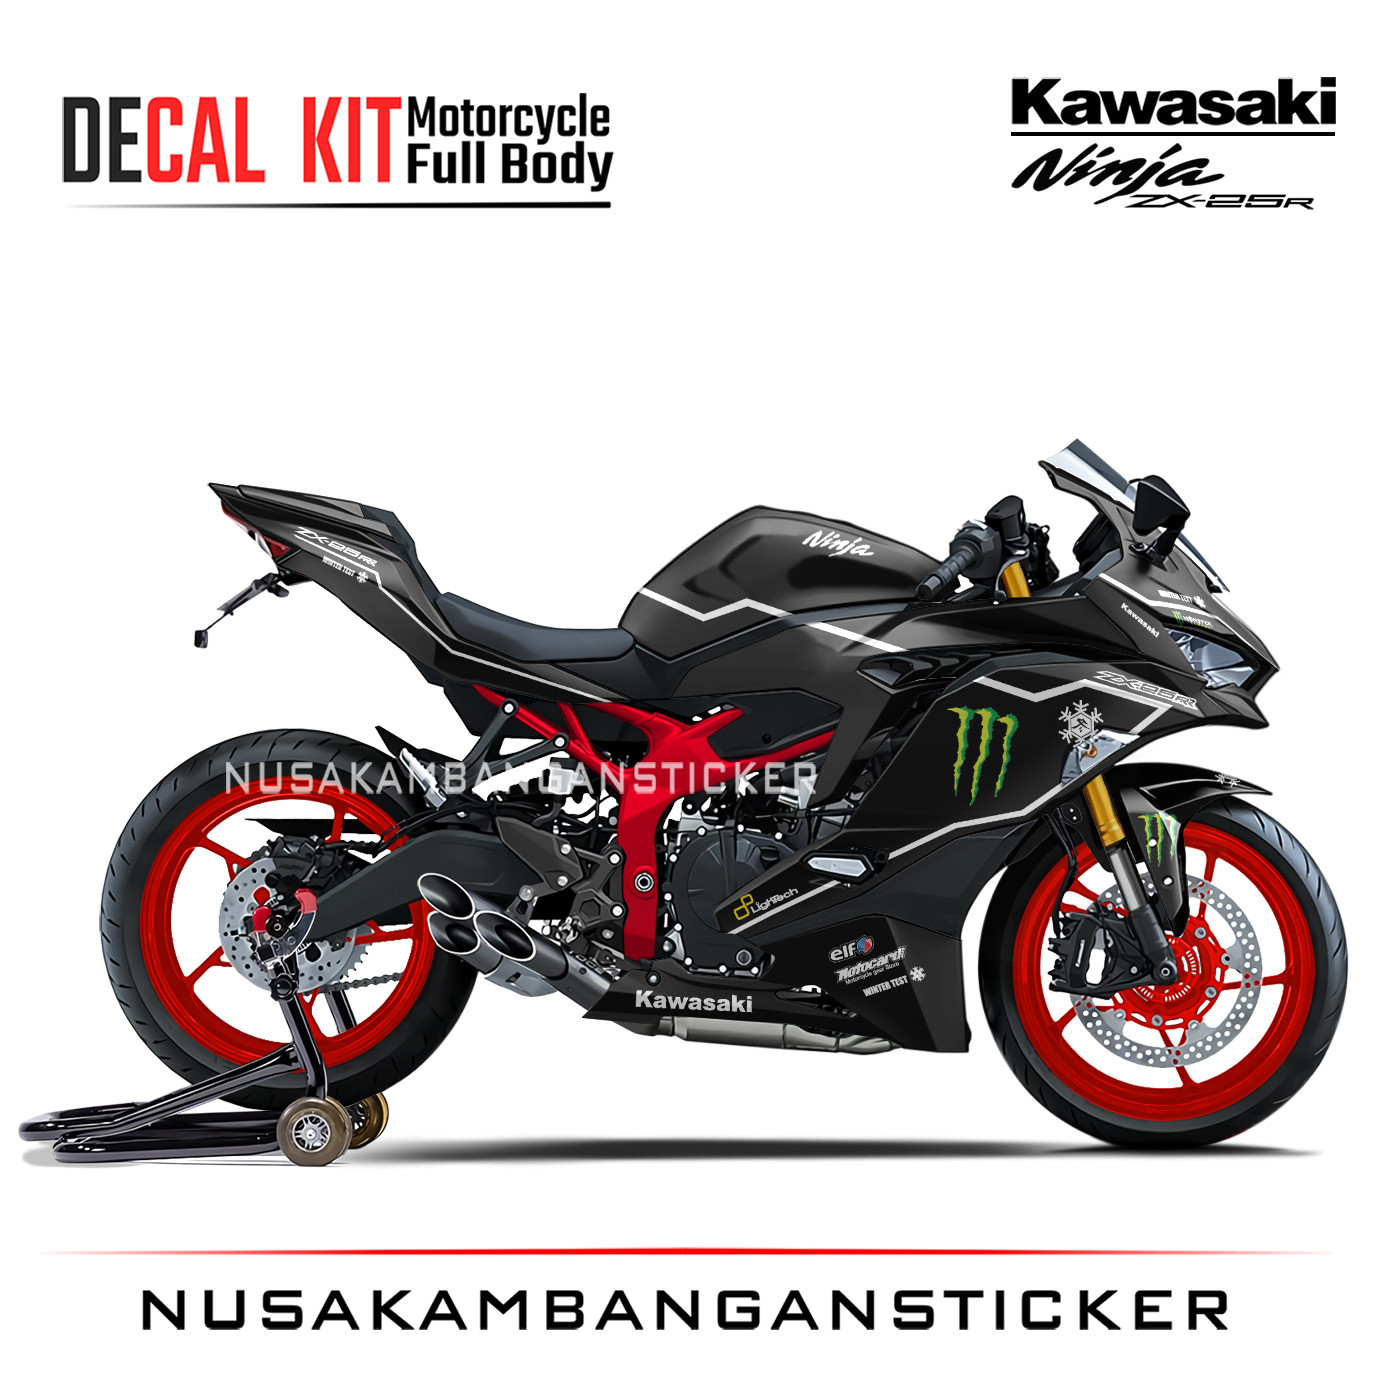 Decal Stiker Kawasaki Ninja ZX25R Black Winter Test Sticker Full Body Nusakambangansticker Nusakambangan Sticker